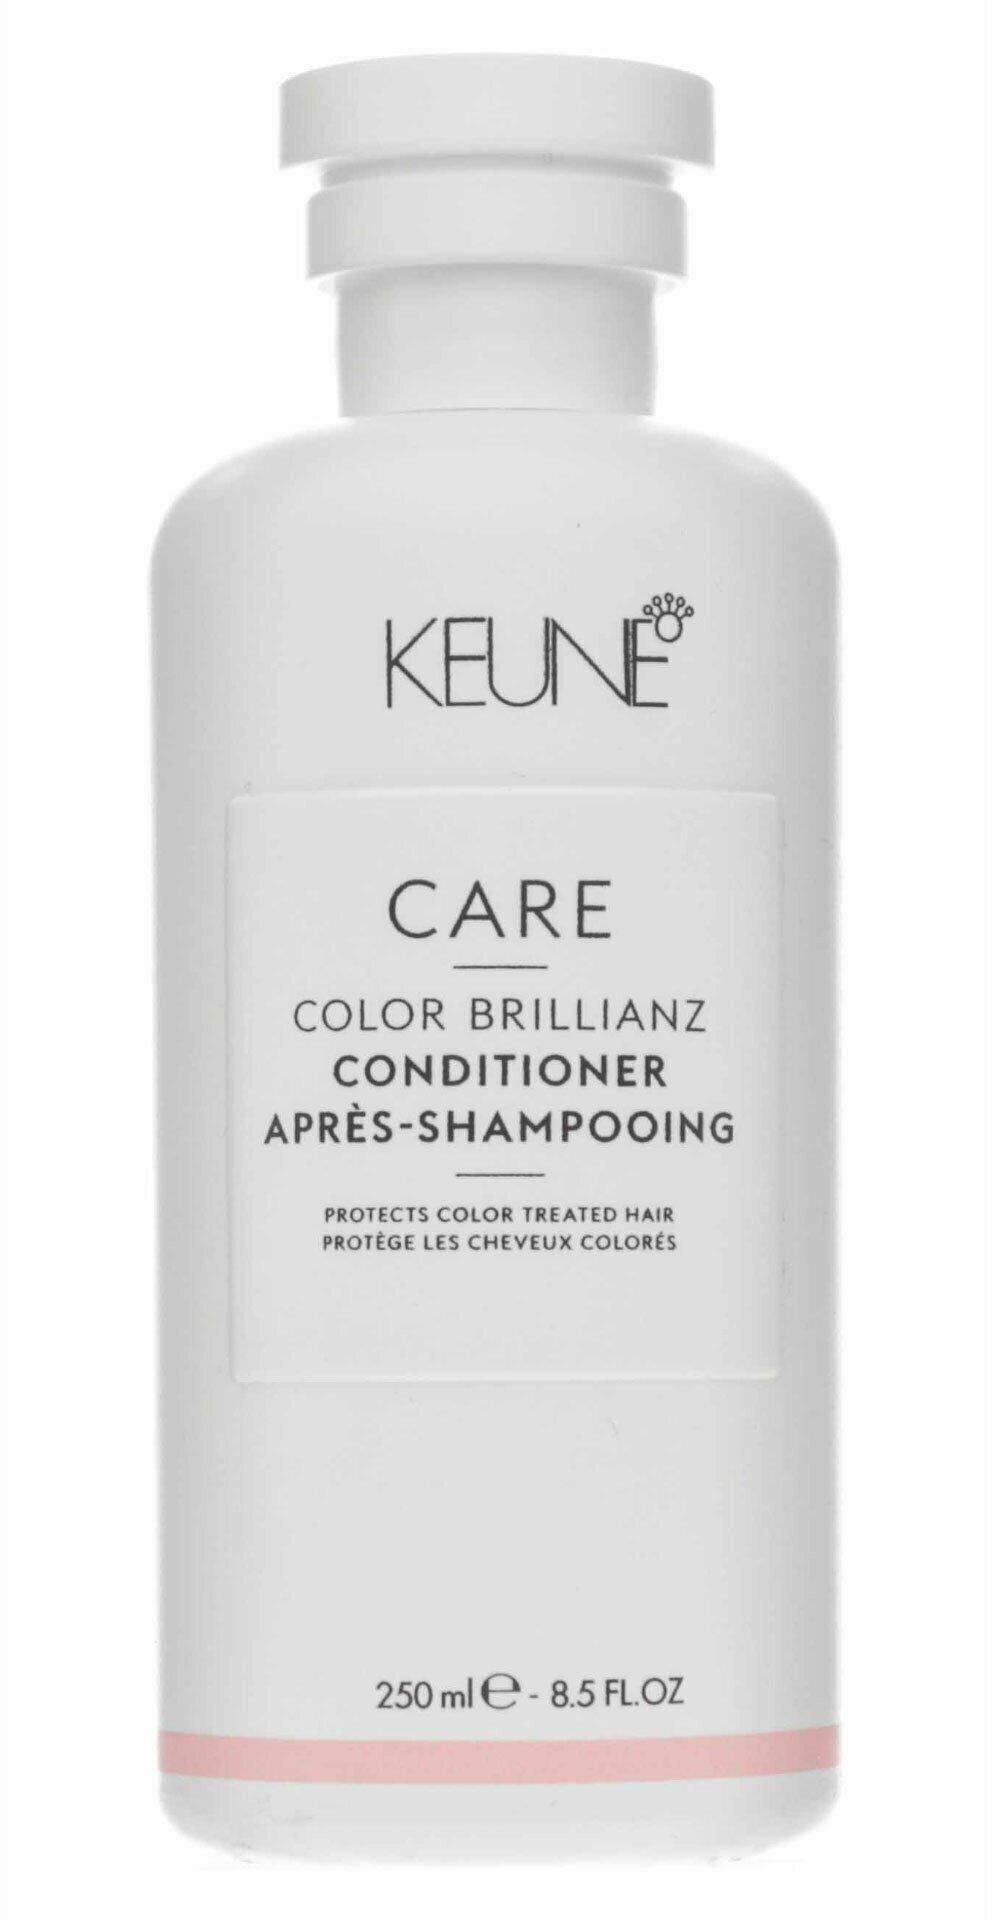 Keune Кондиционер яркость цвета 250 мл - Care Color Brillianz Conditioner